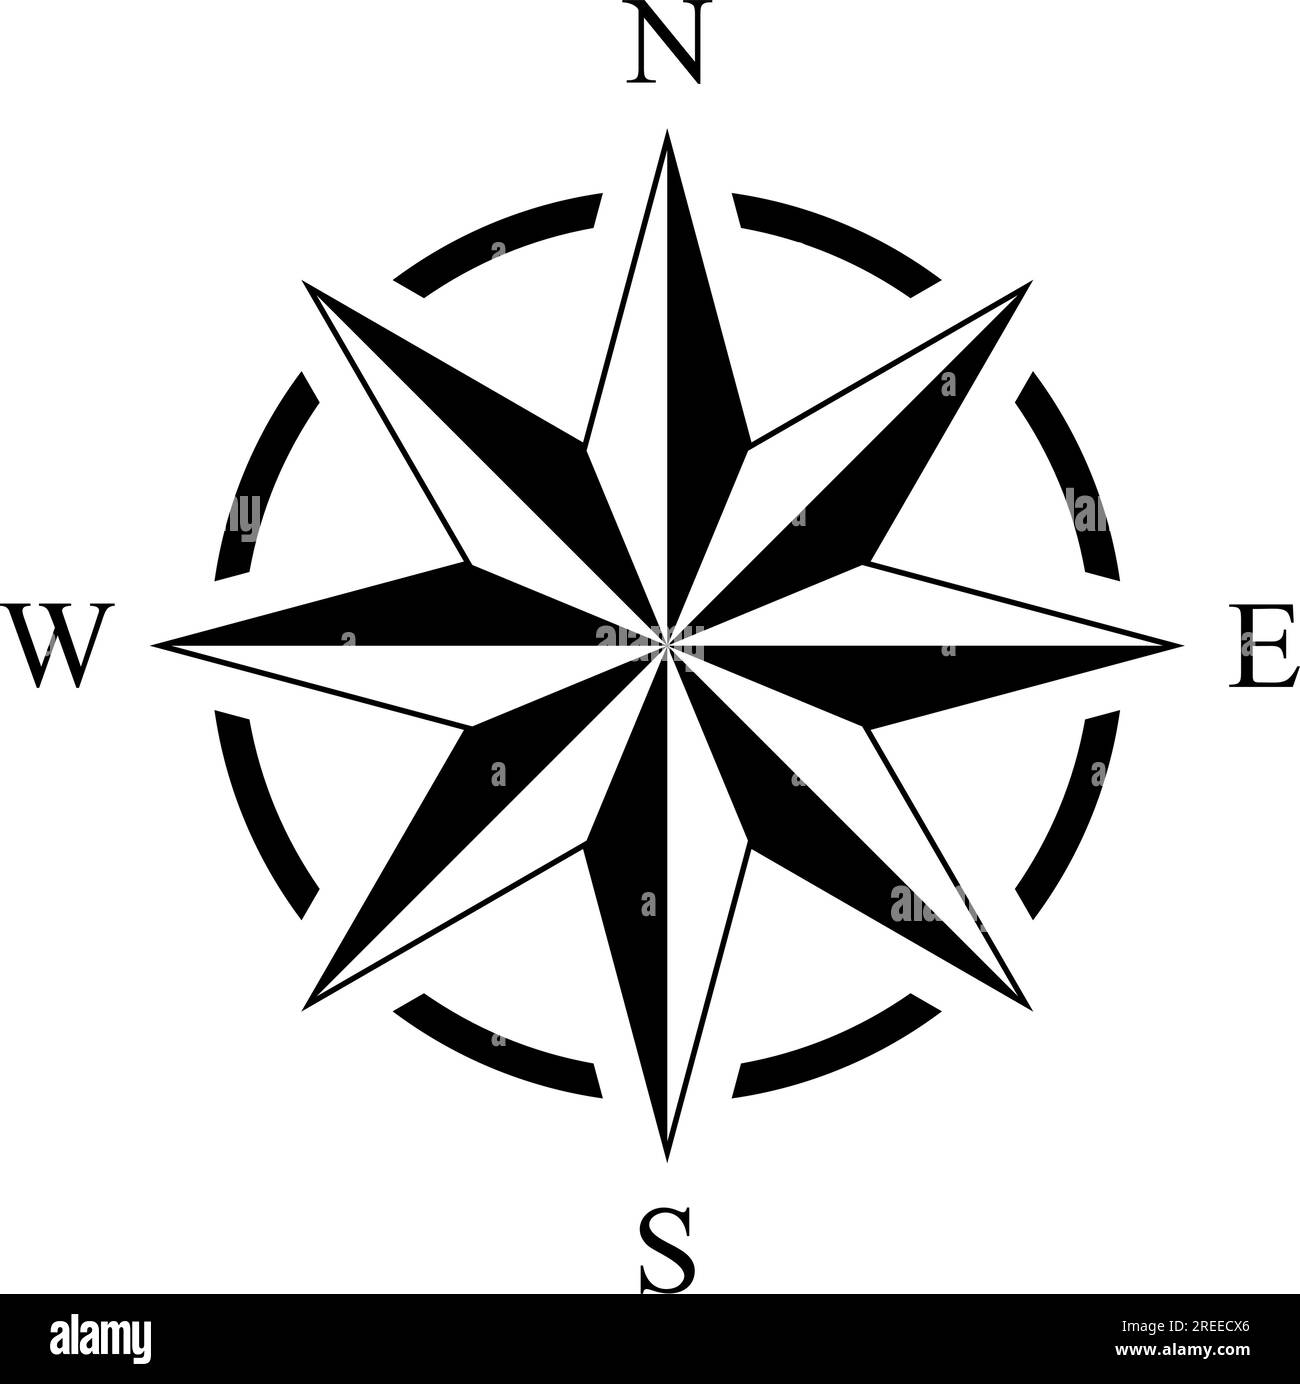 Vecteur rose compas avec huit directions. Arrière-plan isolé. Symbole de navigation marine, nautique ou trekking. Ou utilisable dans une carte géographique. Illustration de Vecteur